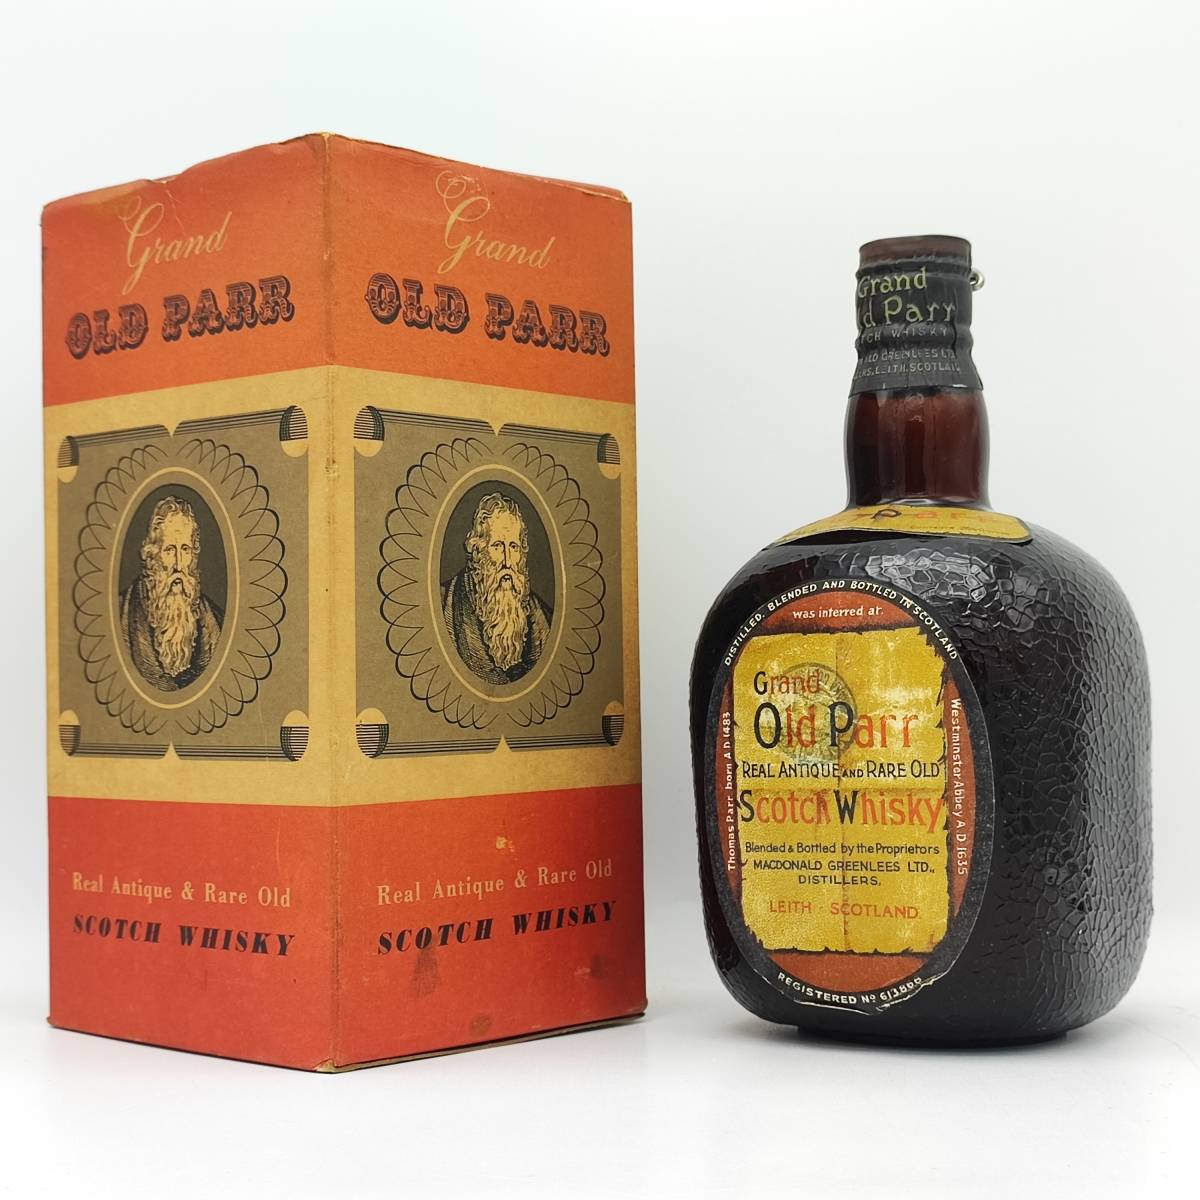 【全国送料無料】Grand Old Parr REAL ANTIQUE AND RARE OLD Scotch Whisky 約43度 約750ml【オールドパー ティンキャップ】